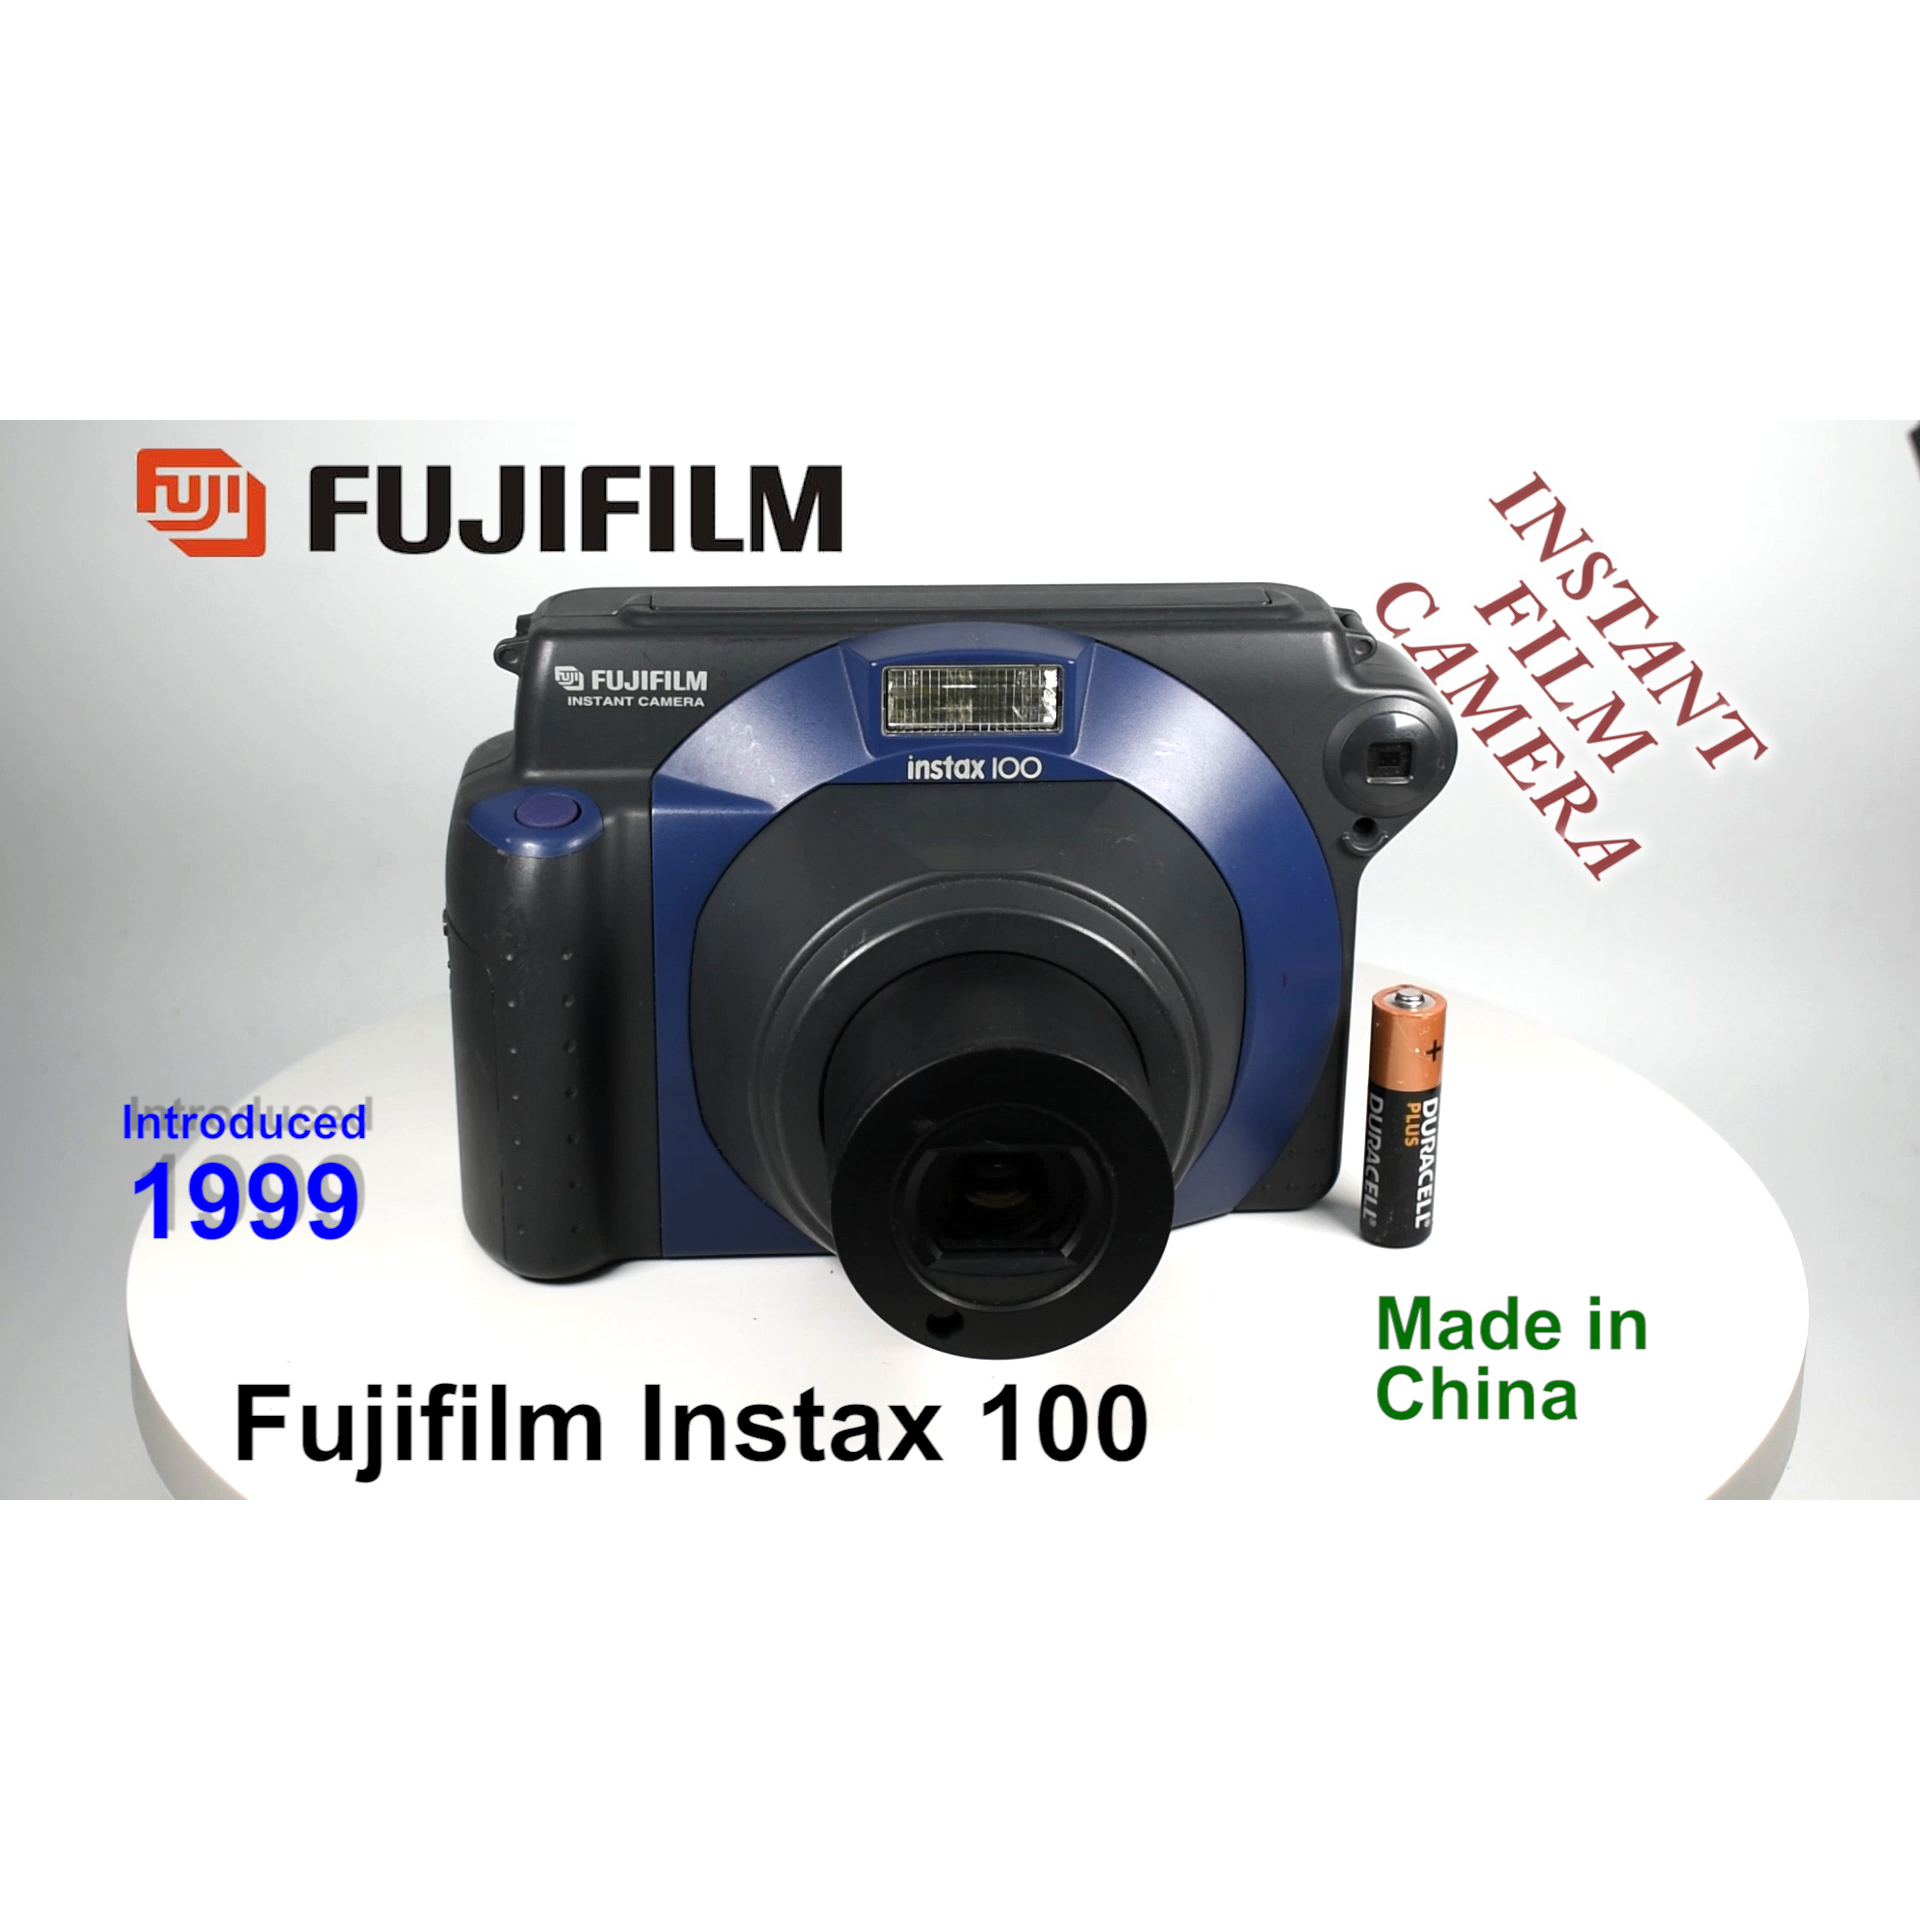 1999 Fujifilm Instax 100 – Instant Film Camera